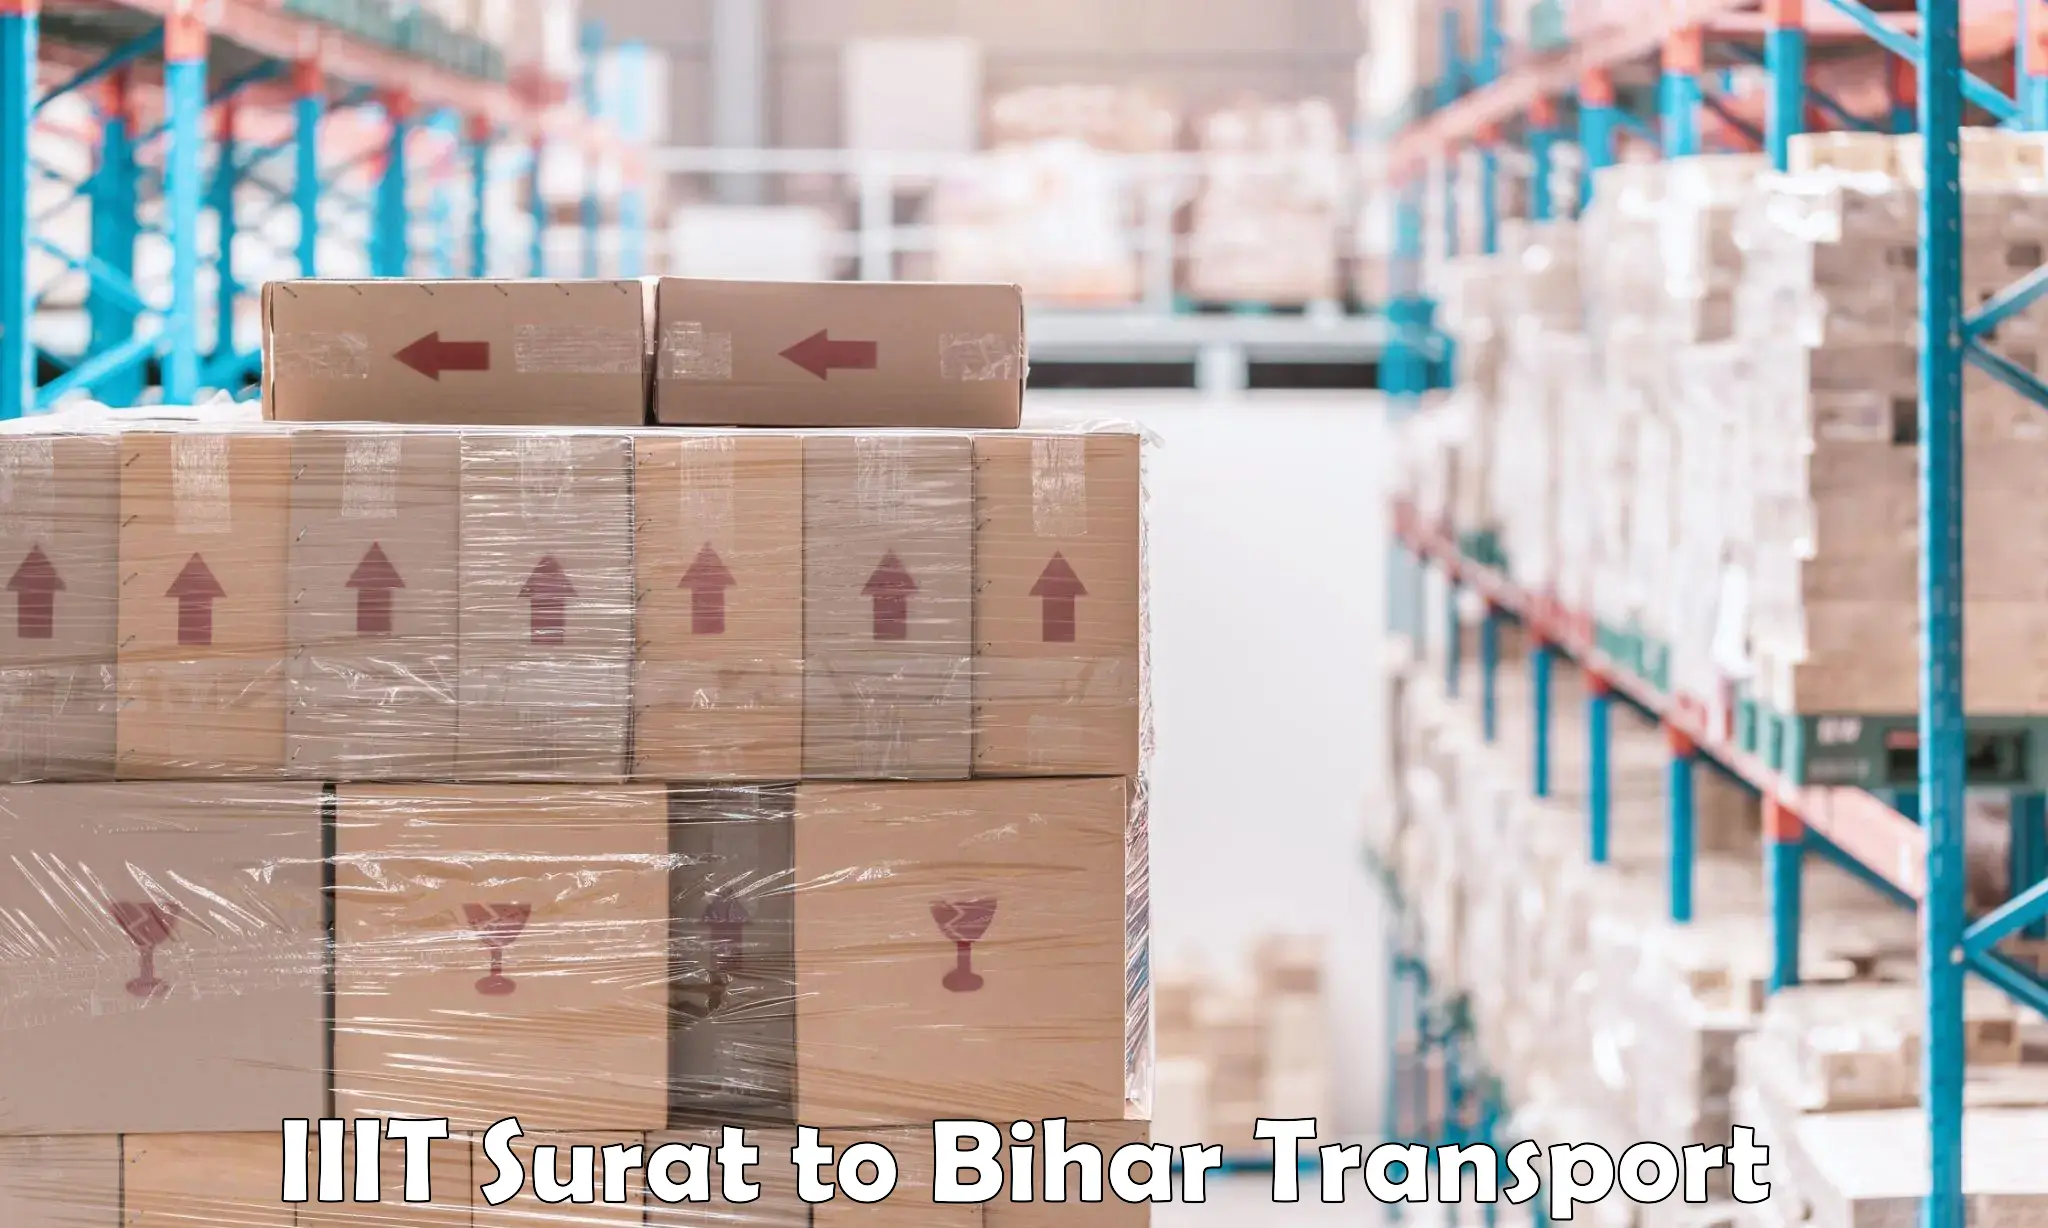 Cargo transport services IIIT Surat to Mahaddipur